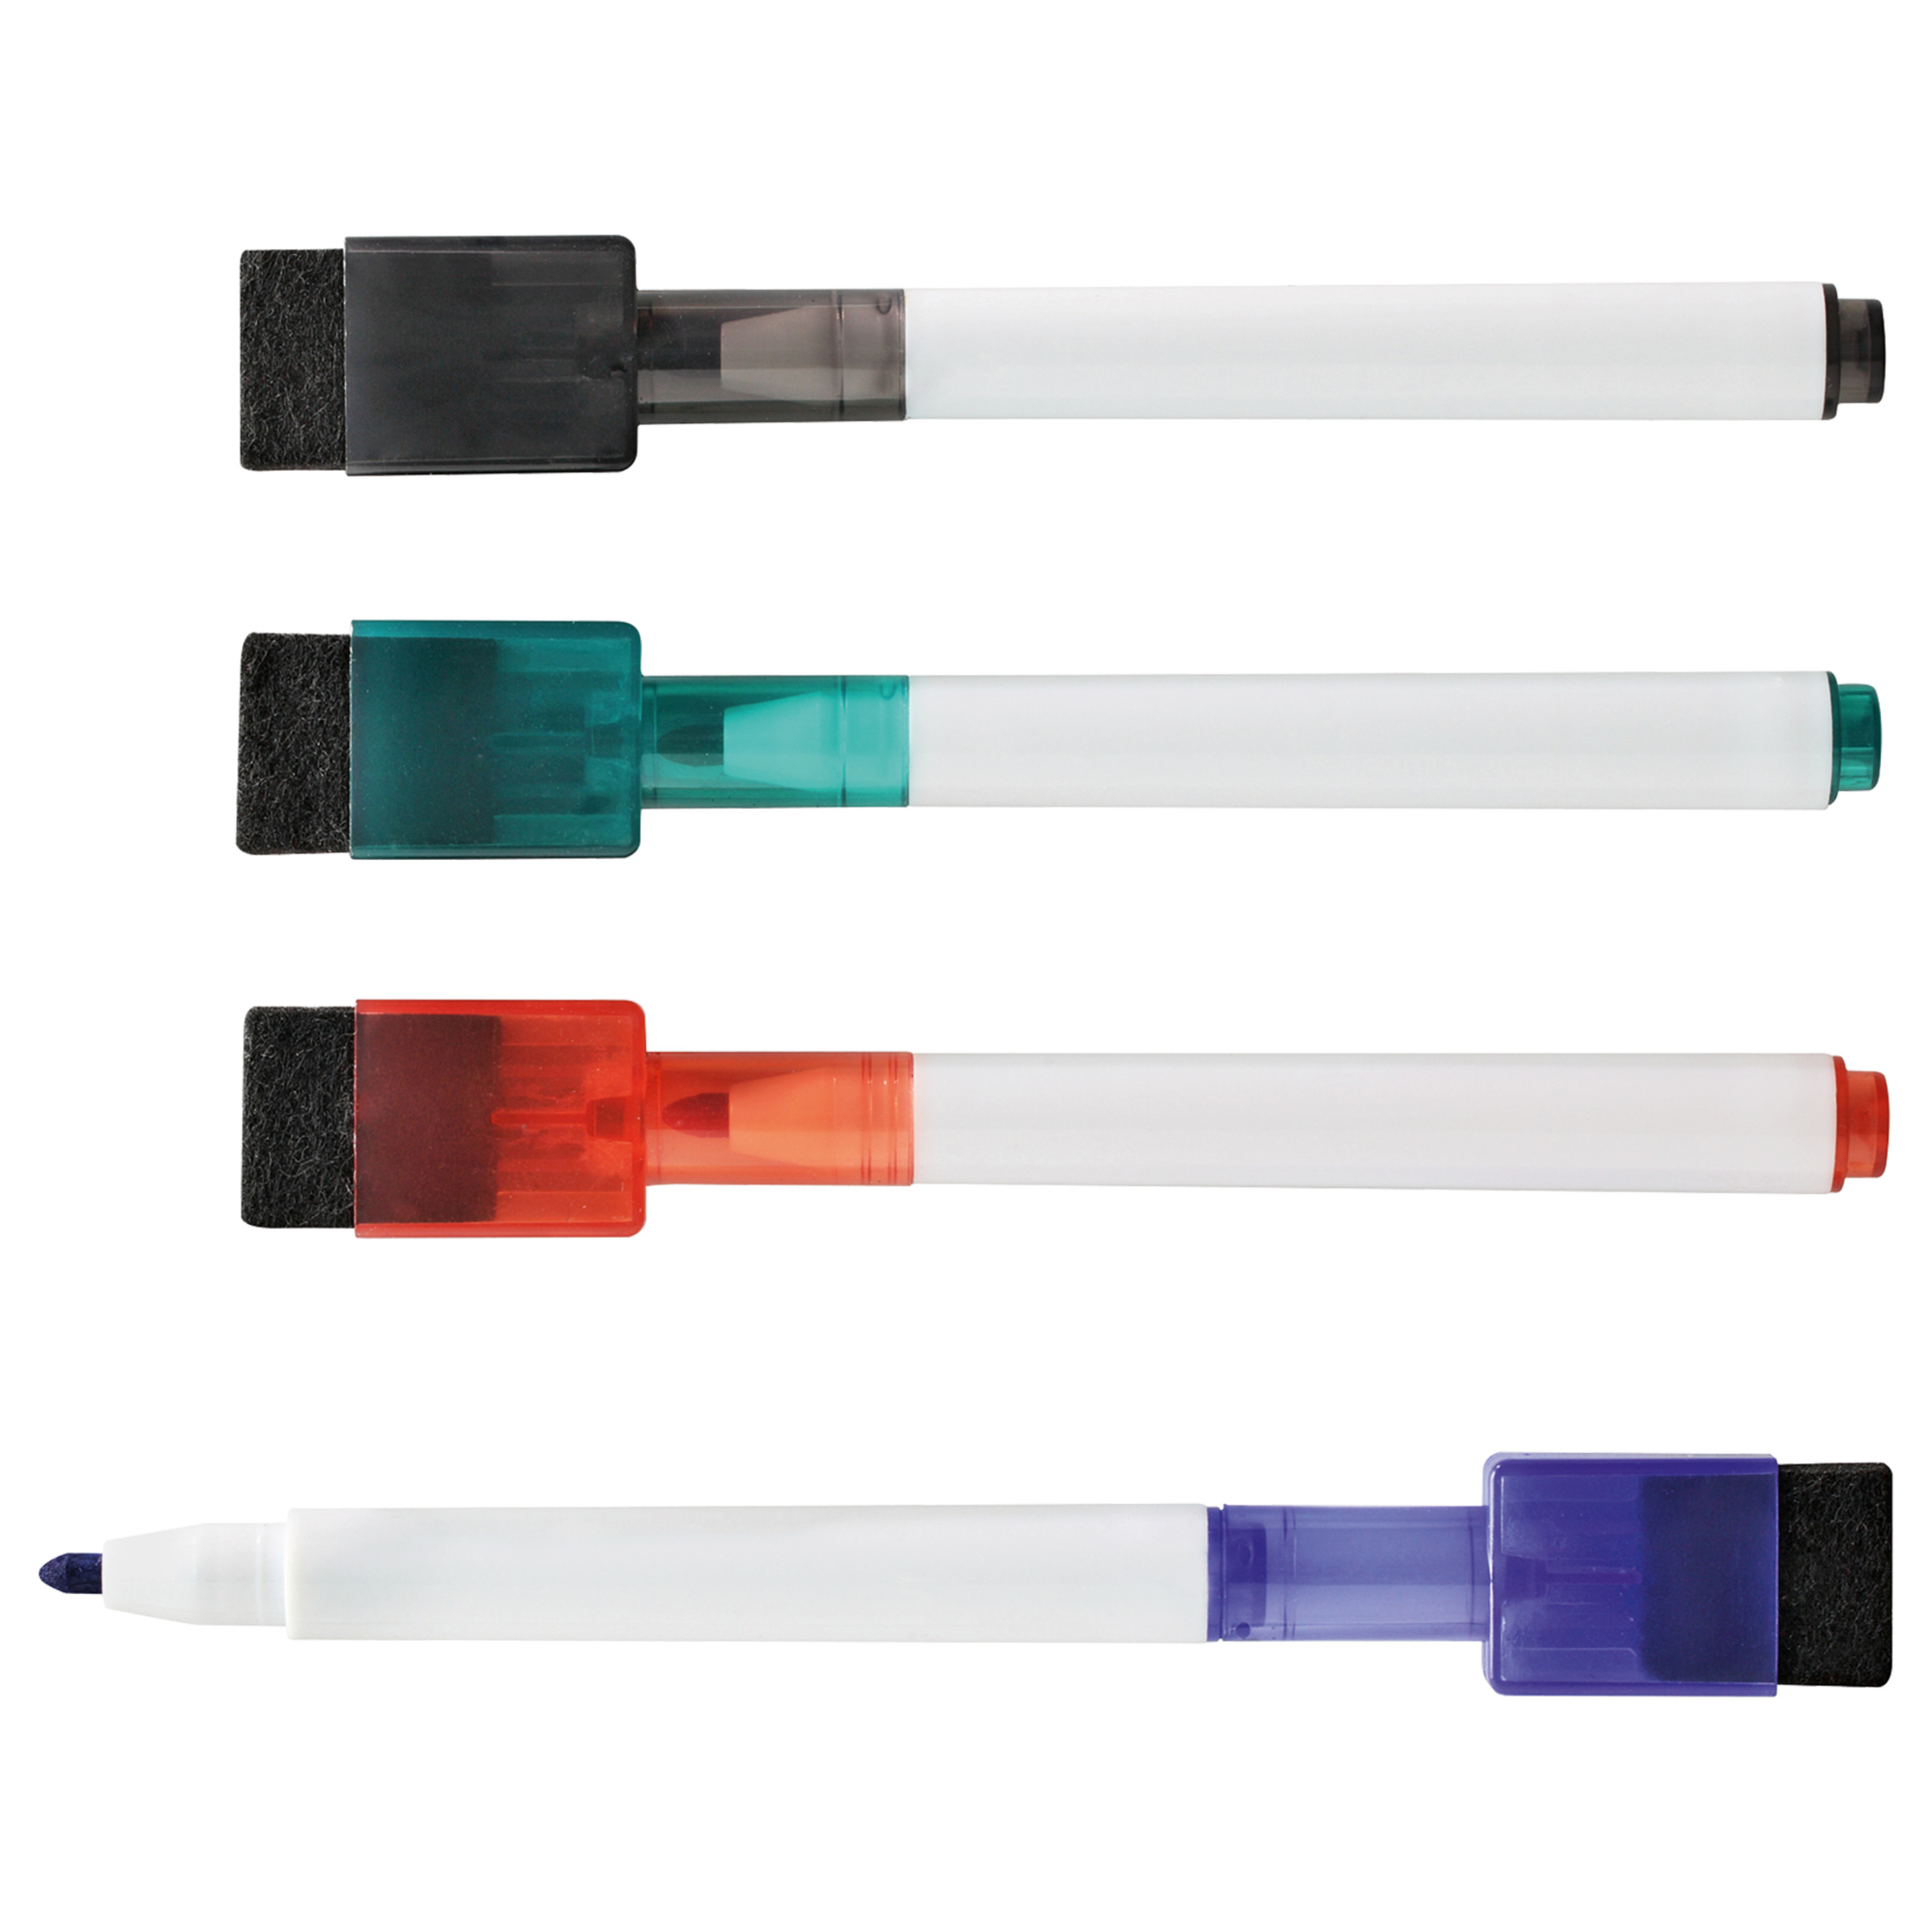 Magnetischer Stifthalter,XCOZU Whiteboard Marker Magnetisch Halter für Whiteboard Kühlschrank Spind und Andere Magnetische Oberflächen,Whiteboard Stifte Halter Magnet Aufbewahrung Halter Weiß 